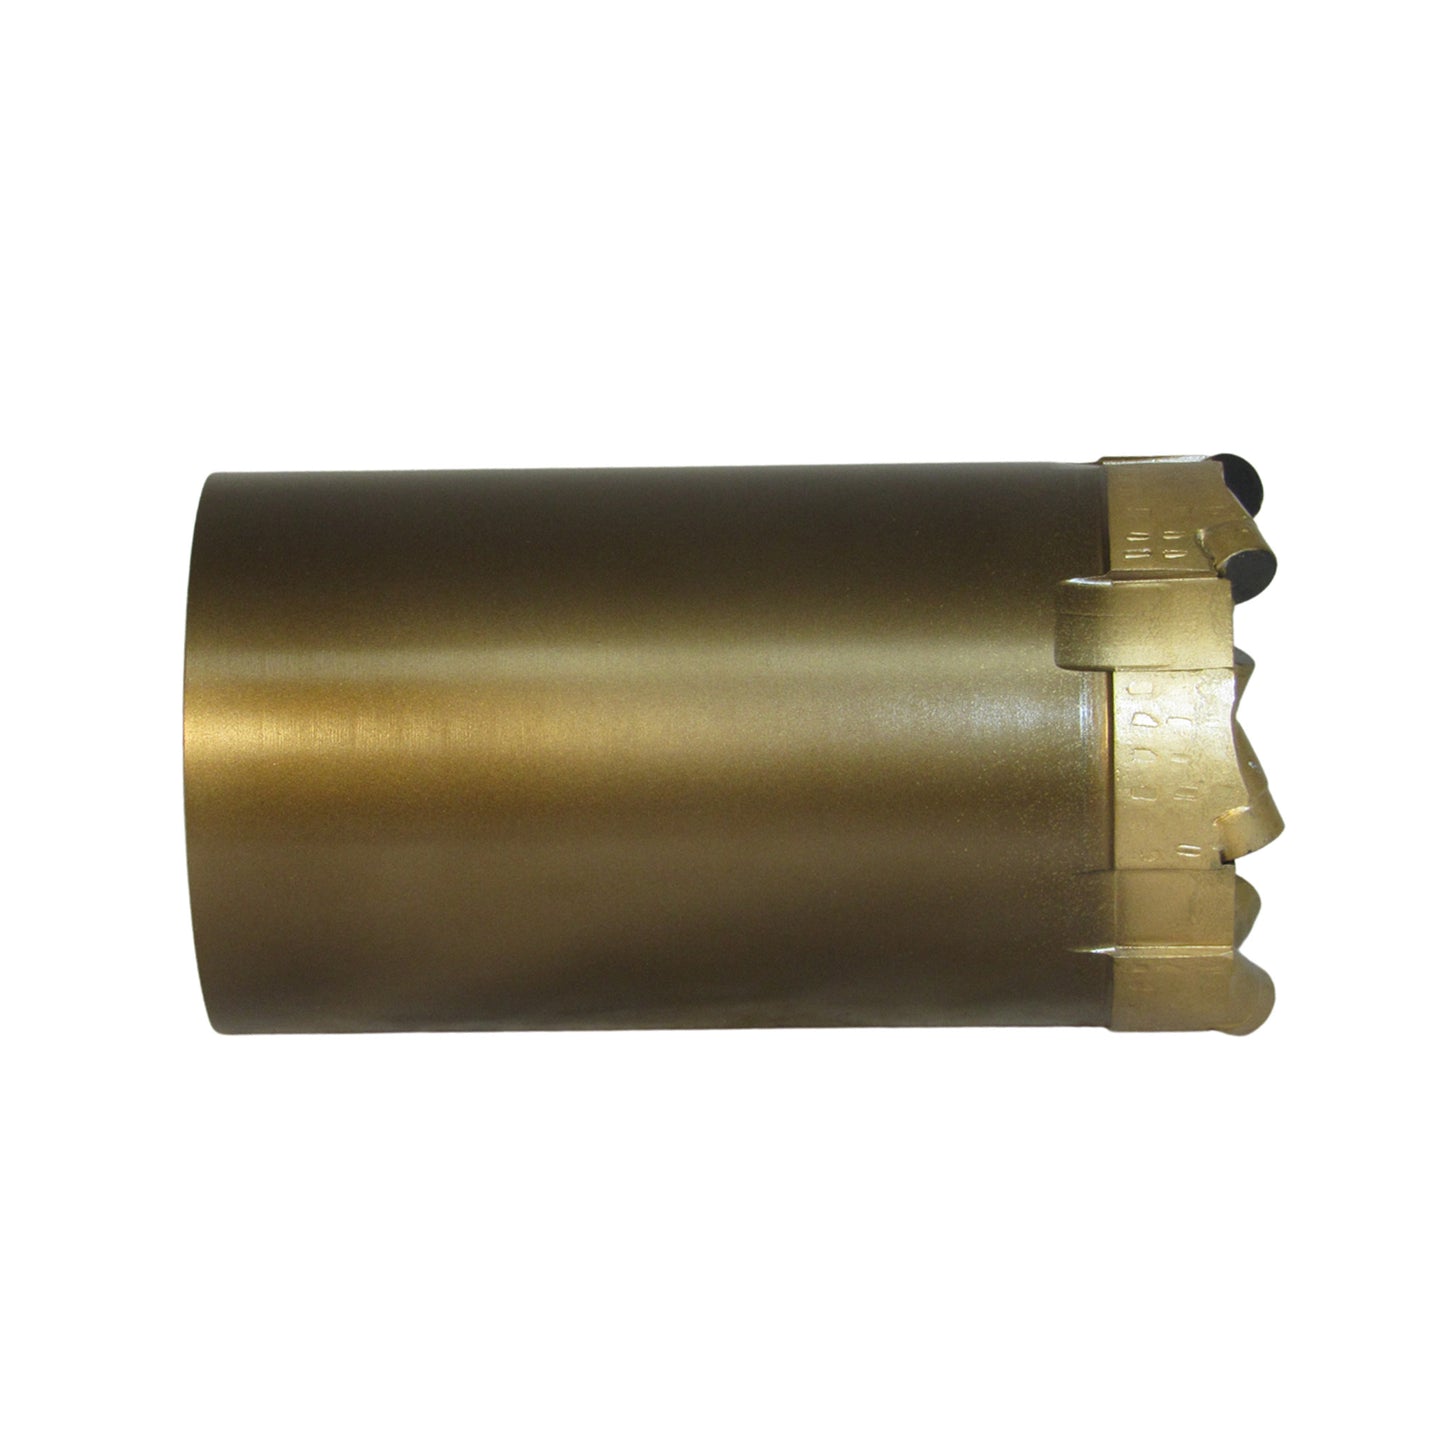 Phoenix T6-101 Coring Drill Bit - PCD - Standard